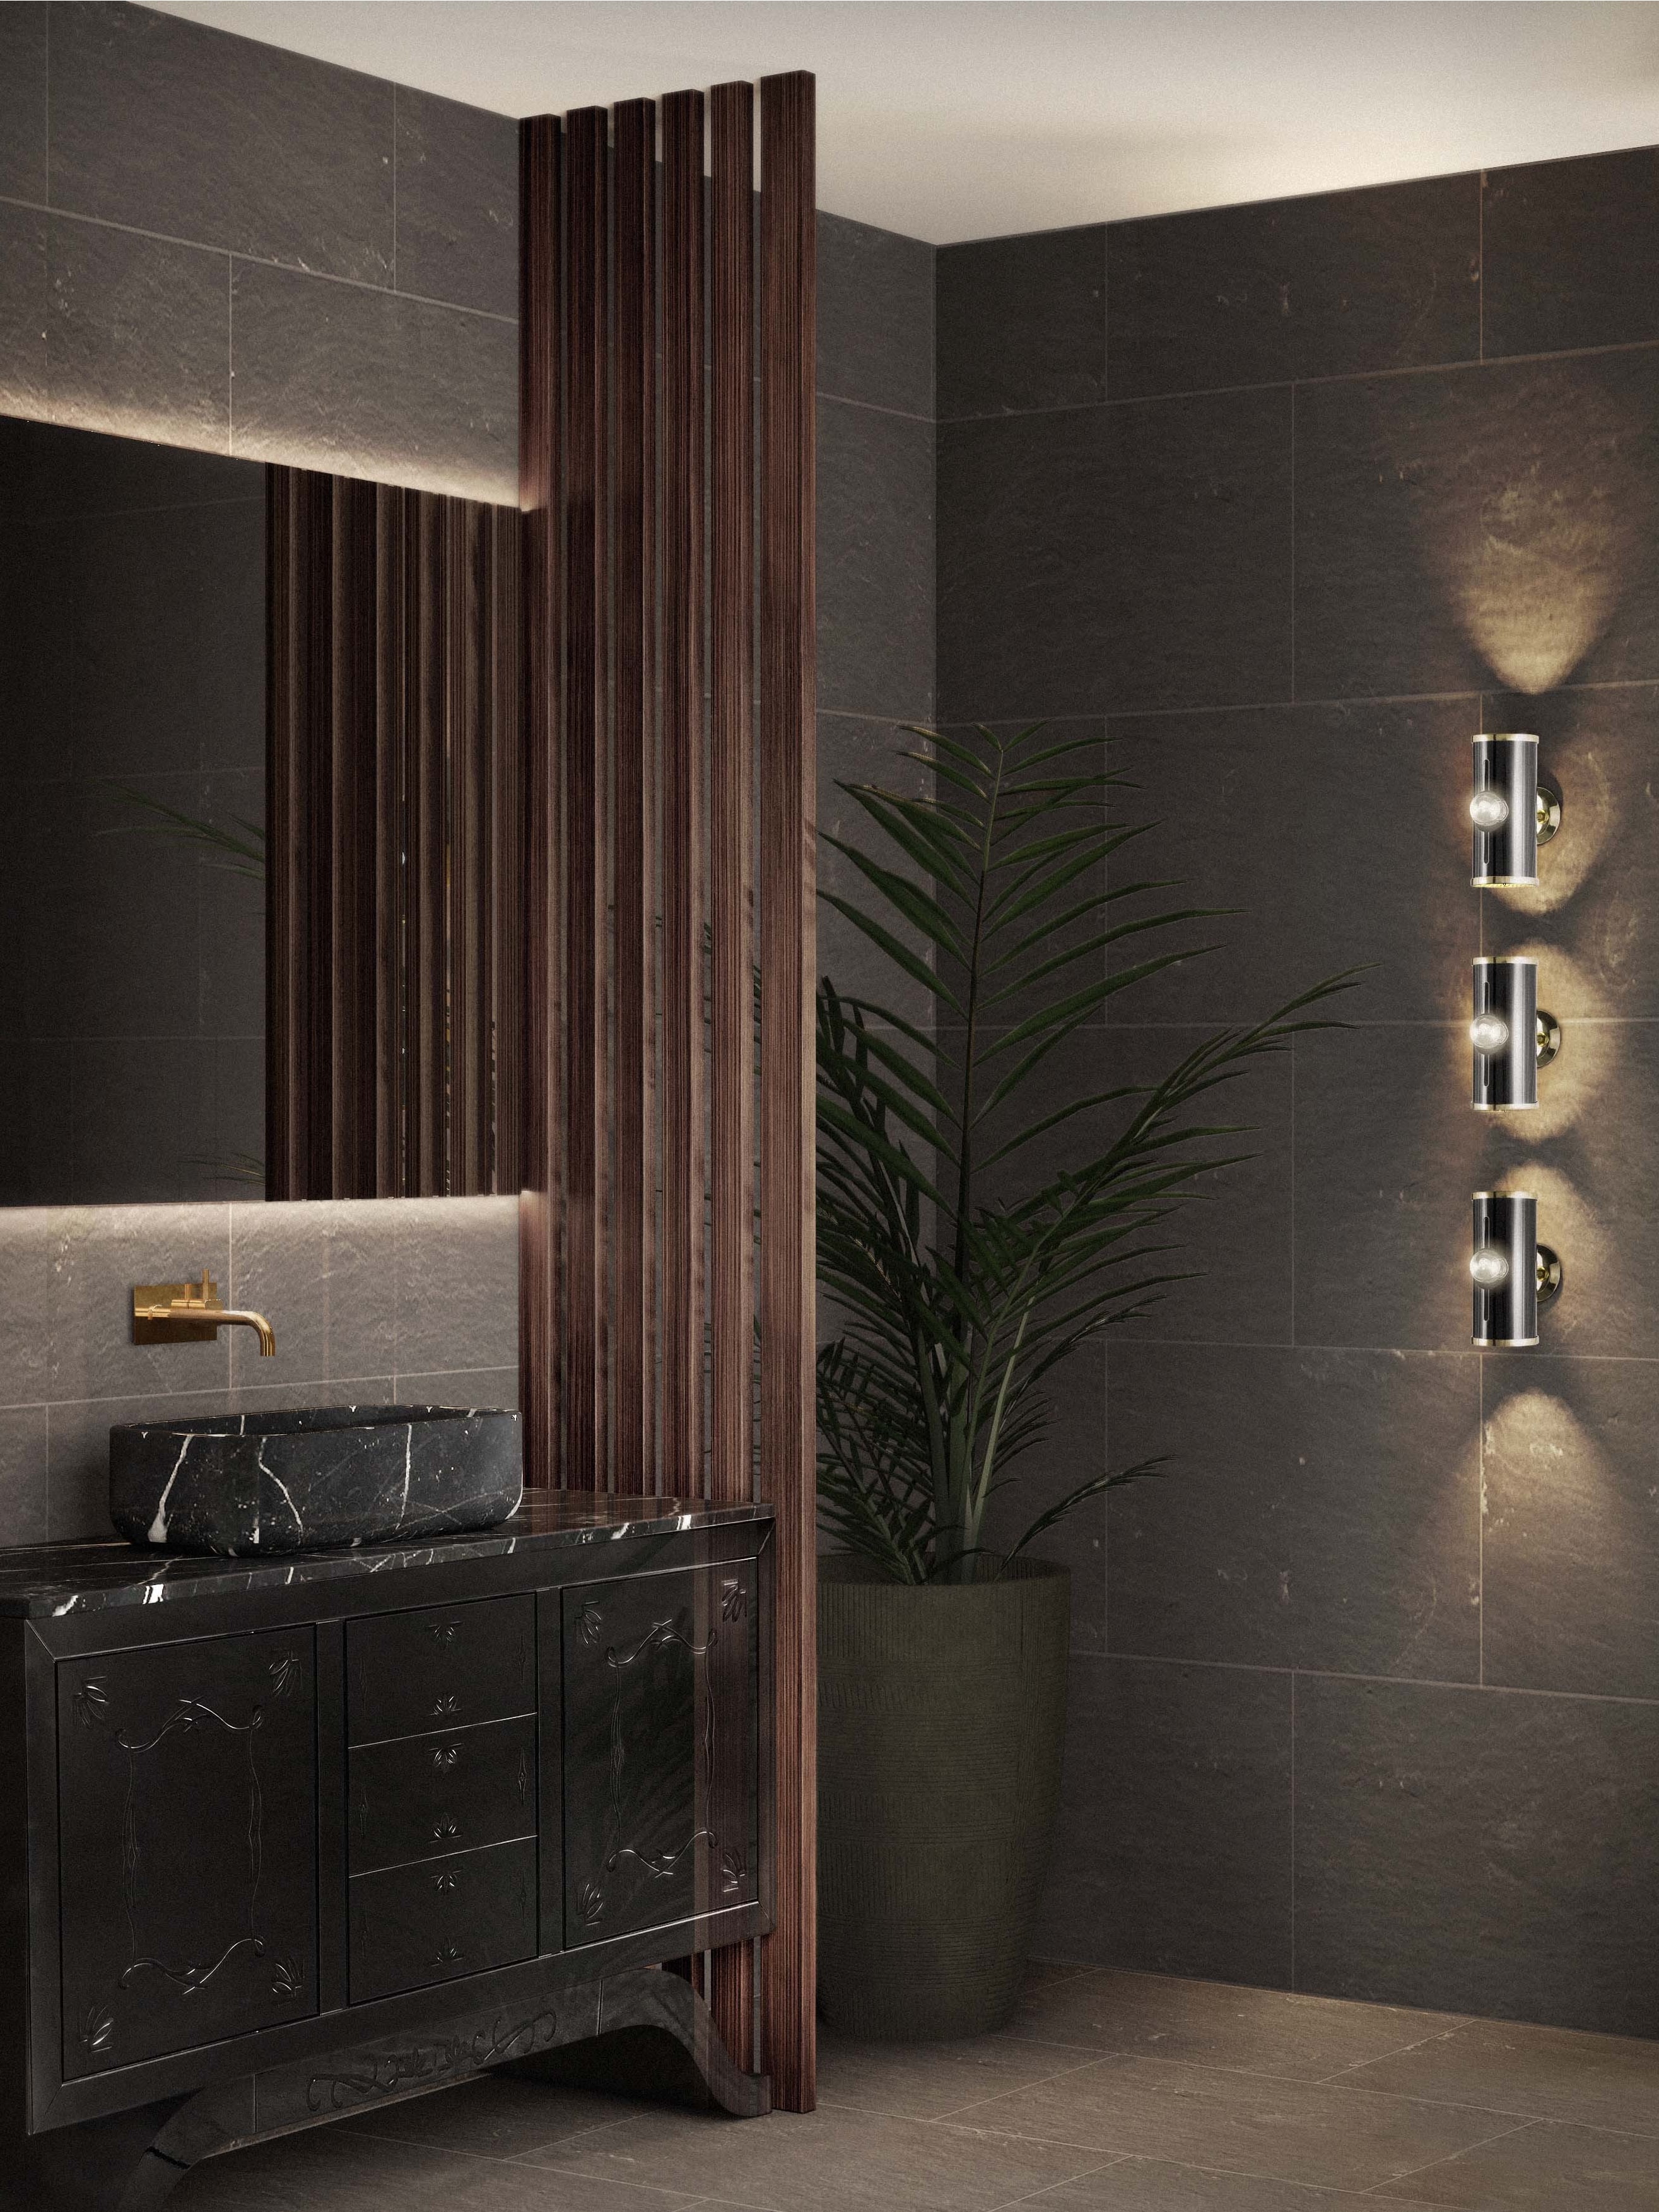 Moody Contemporary Bathroom With Dazzling Bathroom Vanity - Home'Society